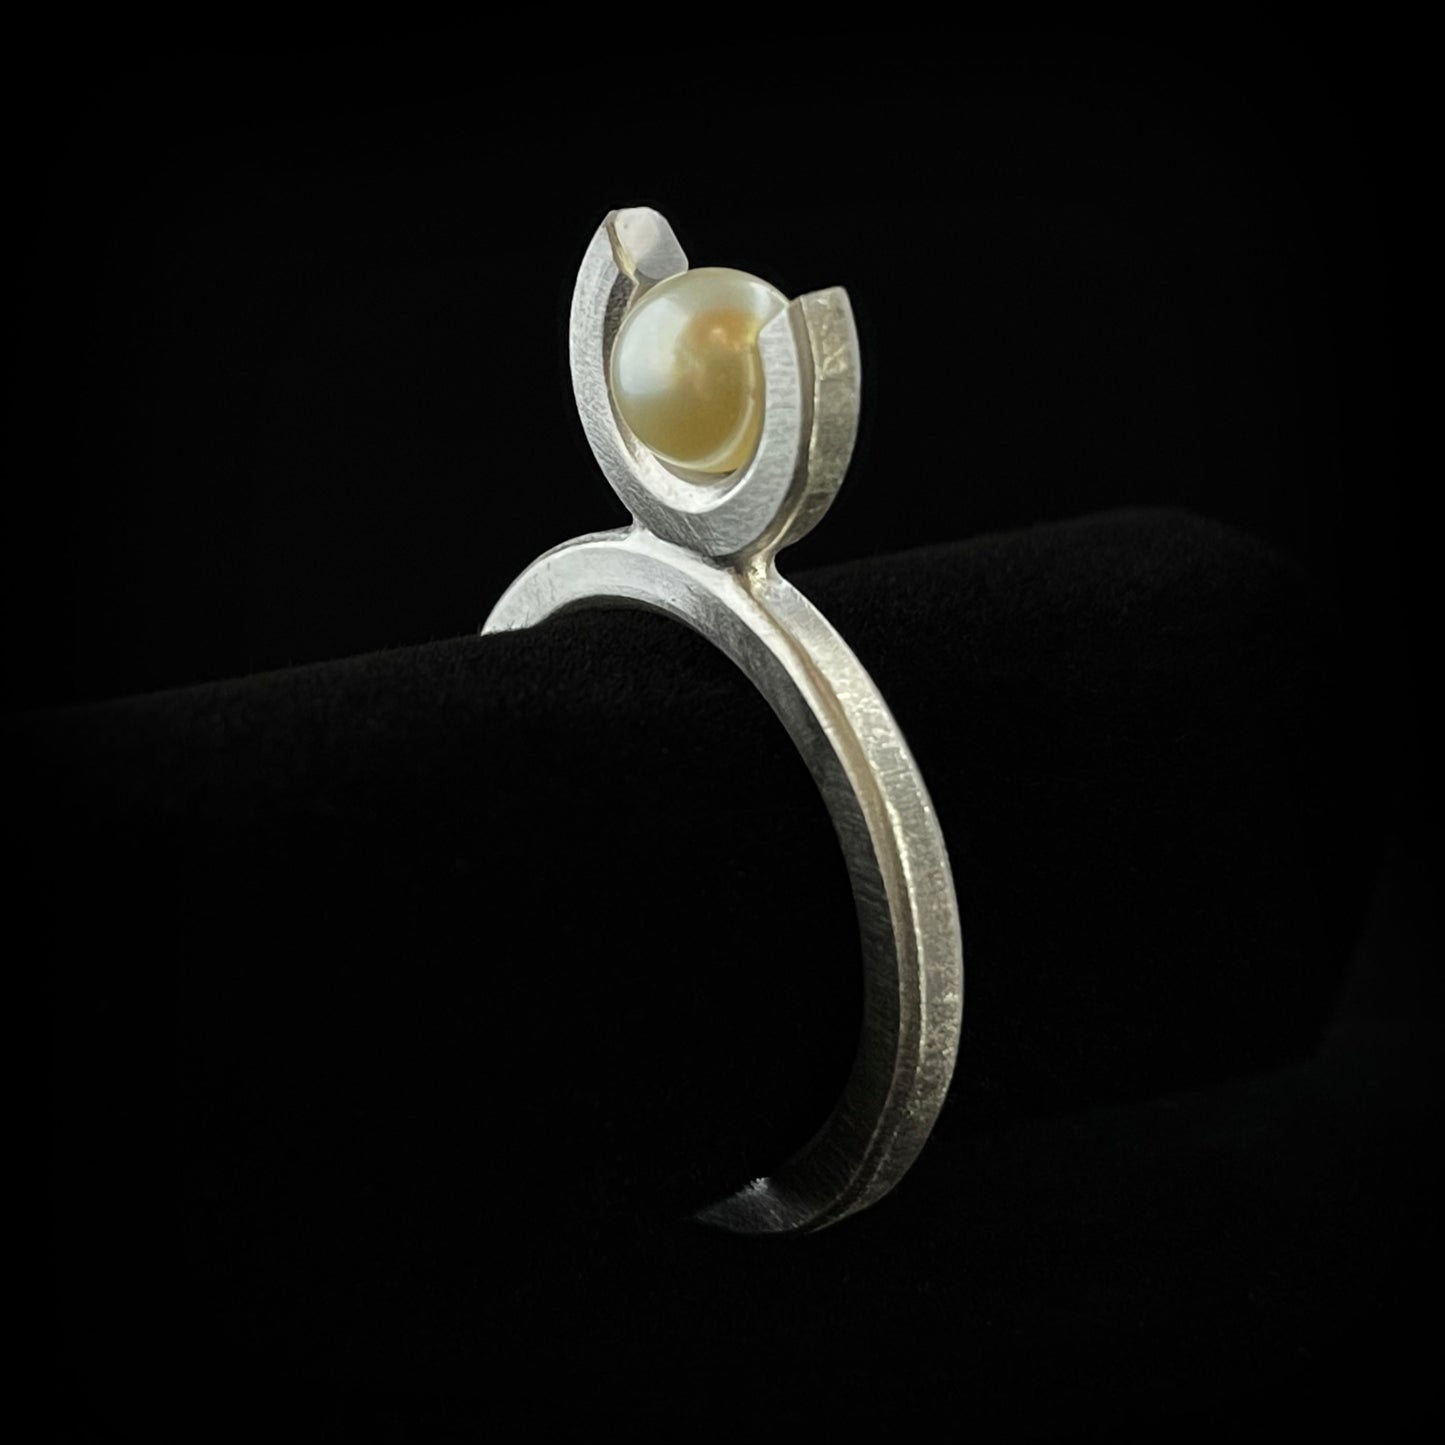 Tulip pearl ring - Cream